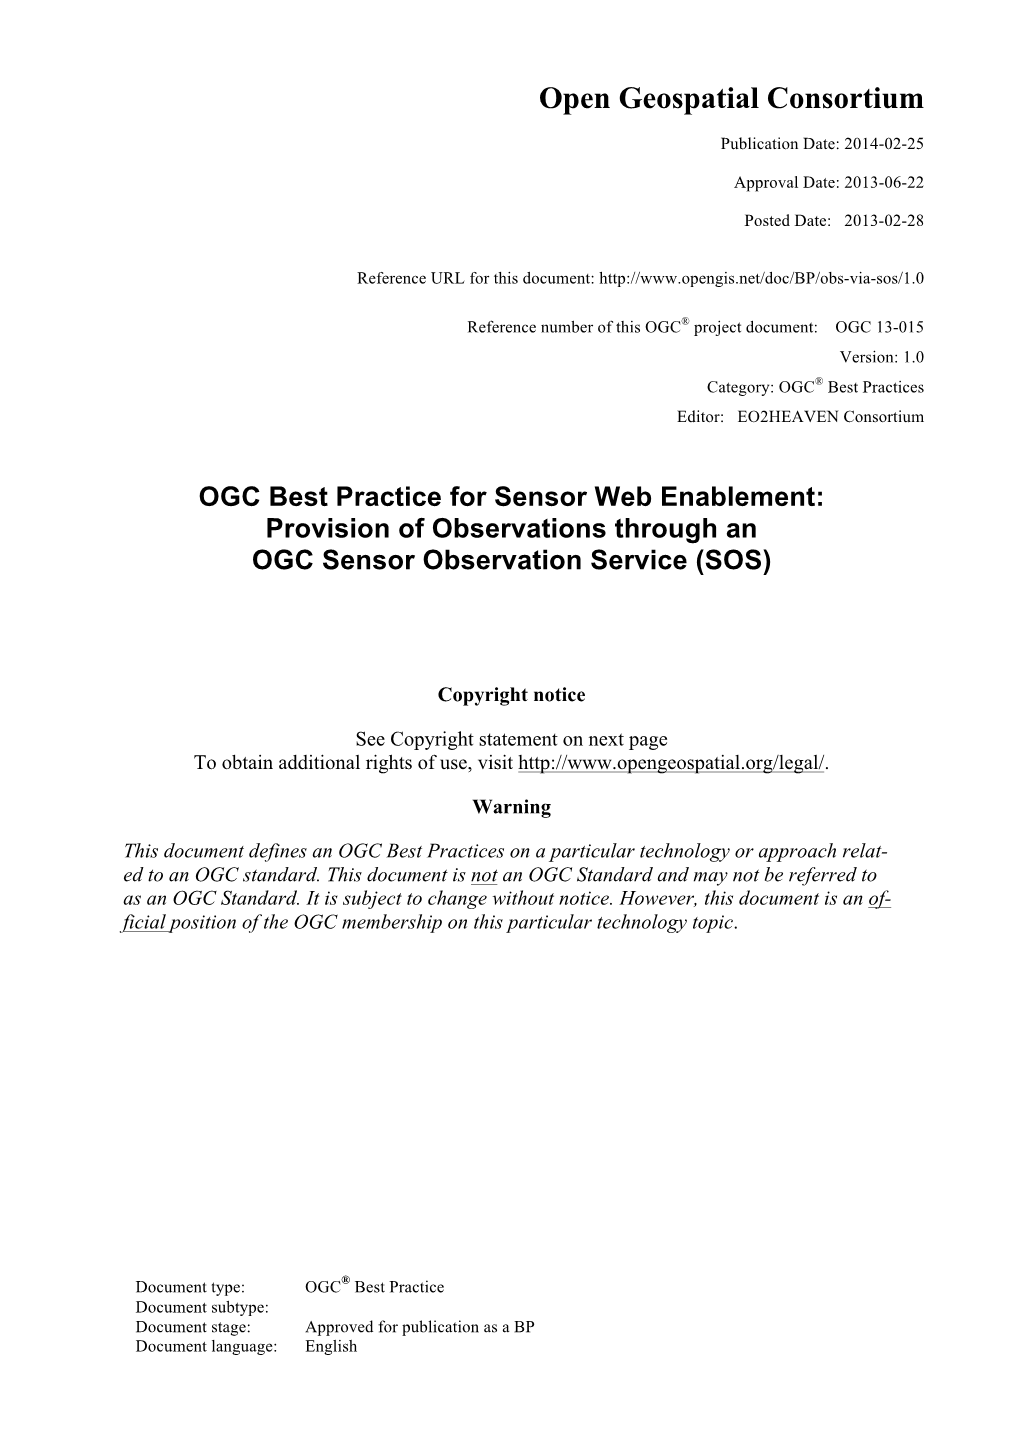 OGC Best Practice for Sensor Web Enablement: Provision of Observations Through an OGC Sensor Observation Service (SOS)